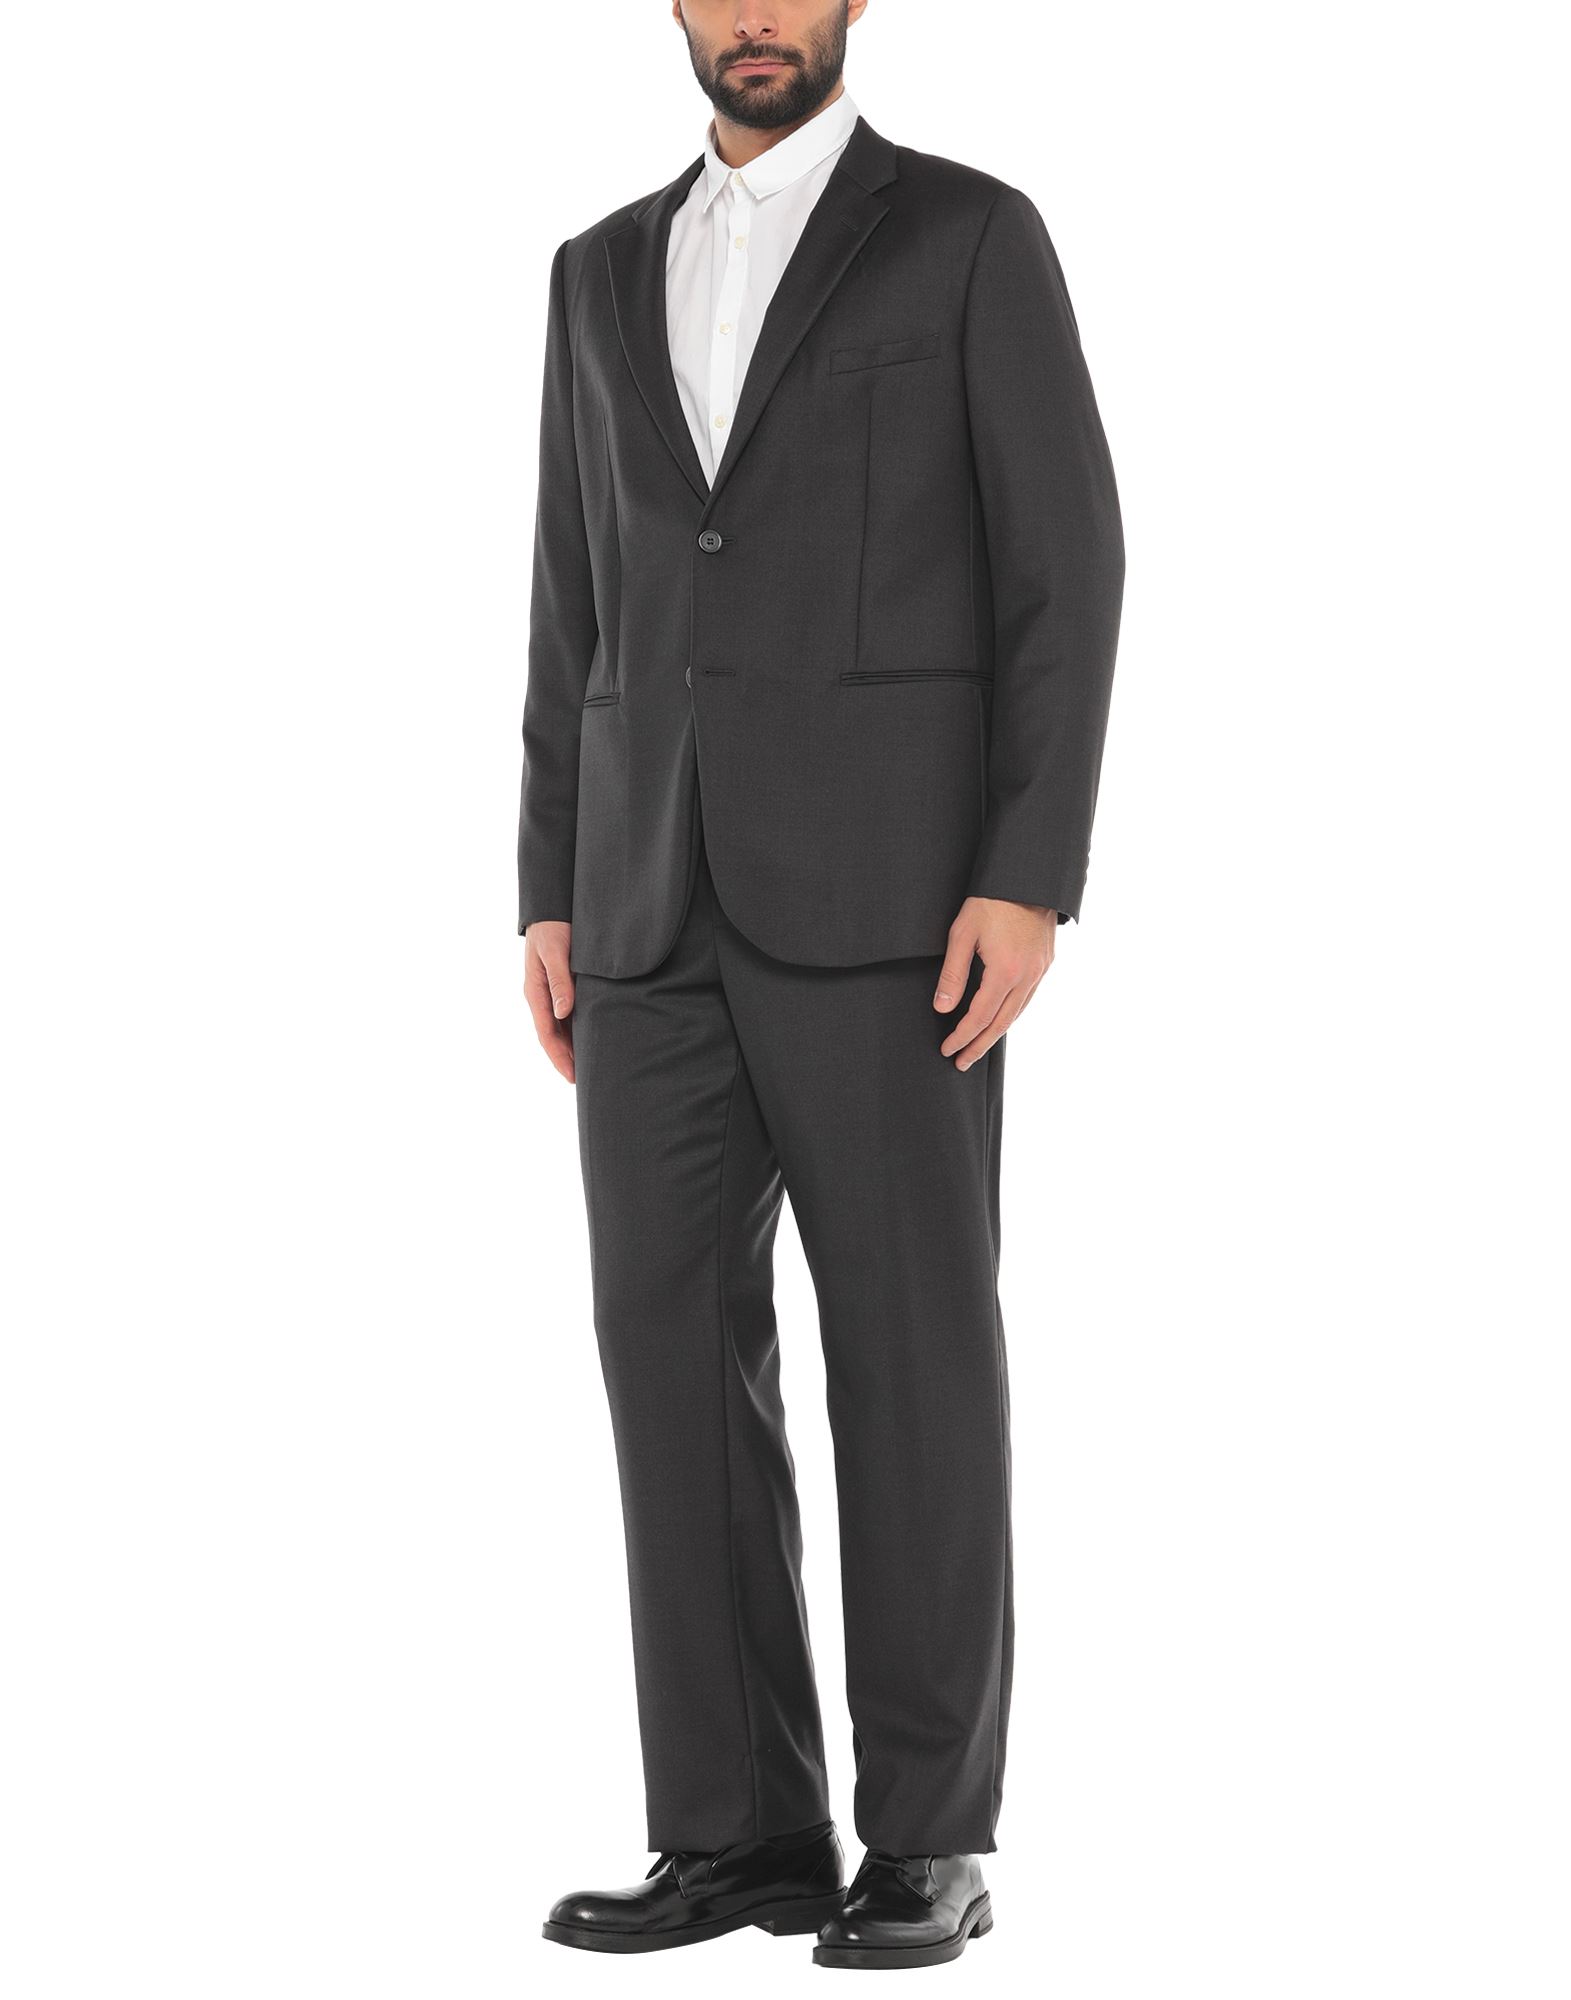 EMPORIO ARMANI Suits - Item 49406003